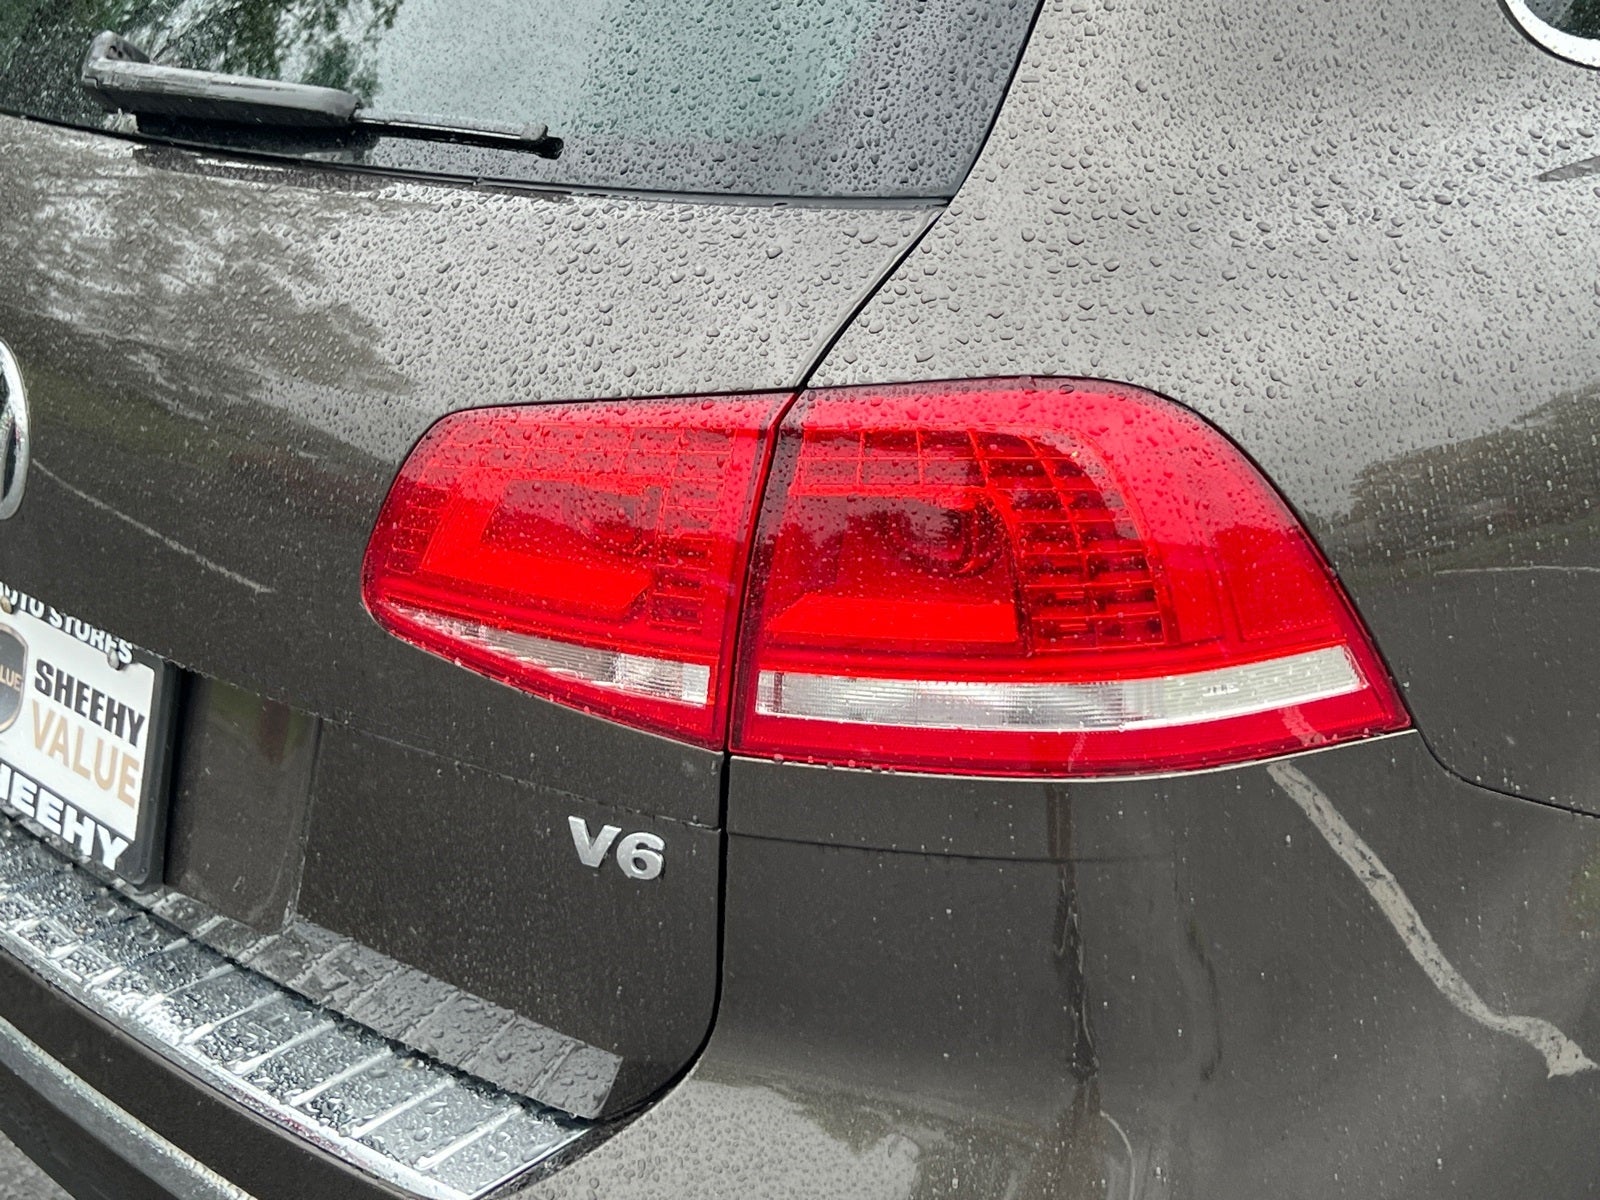 2016 Volkswagen Touareg VR6 FSI Sport